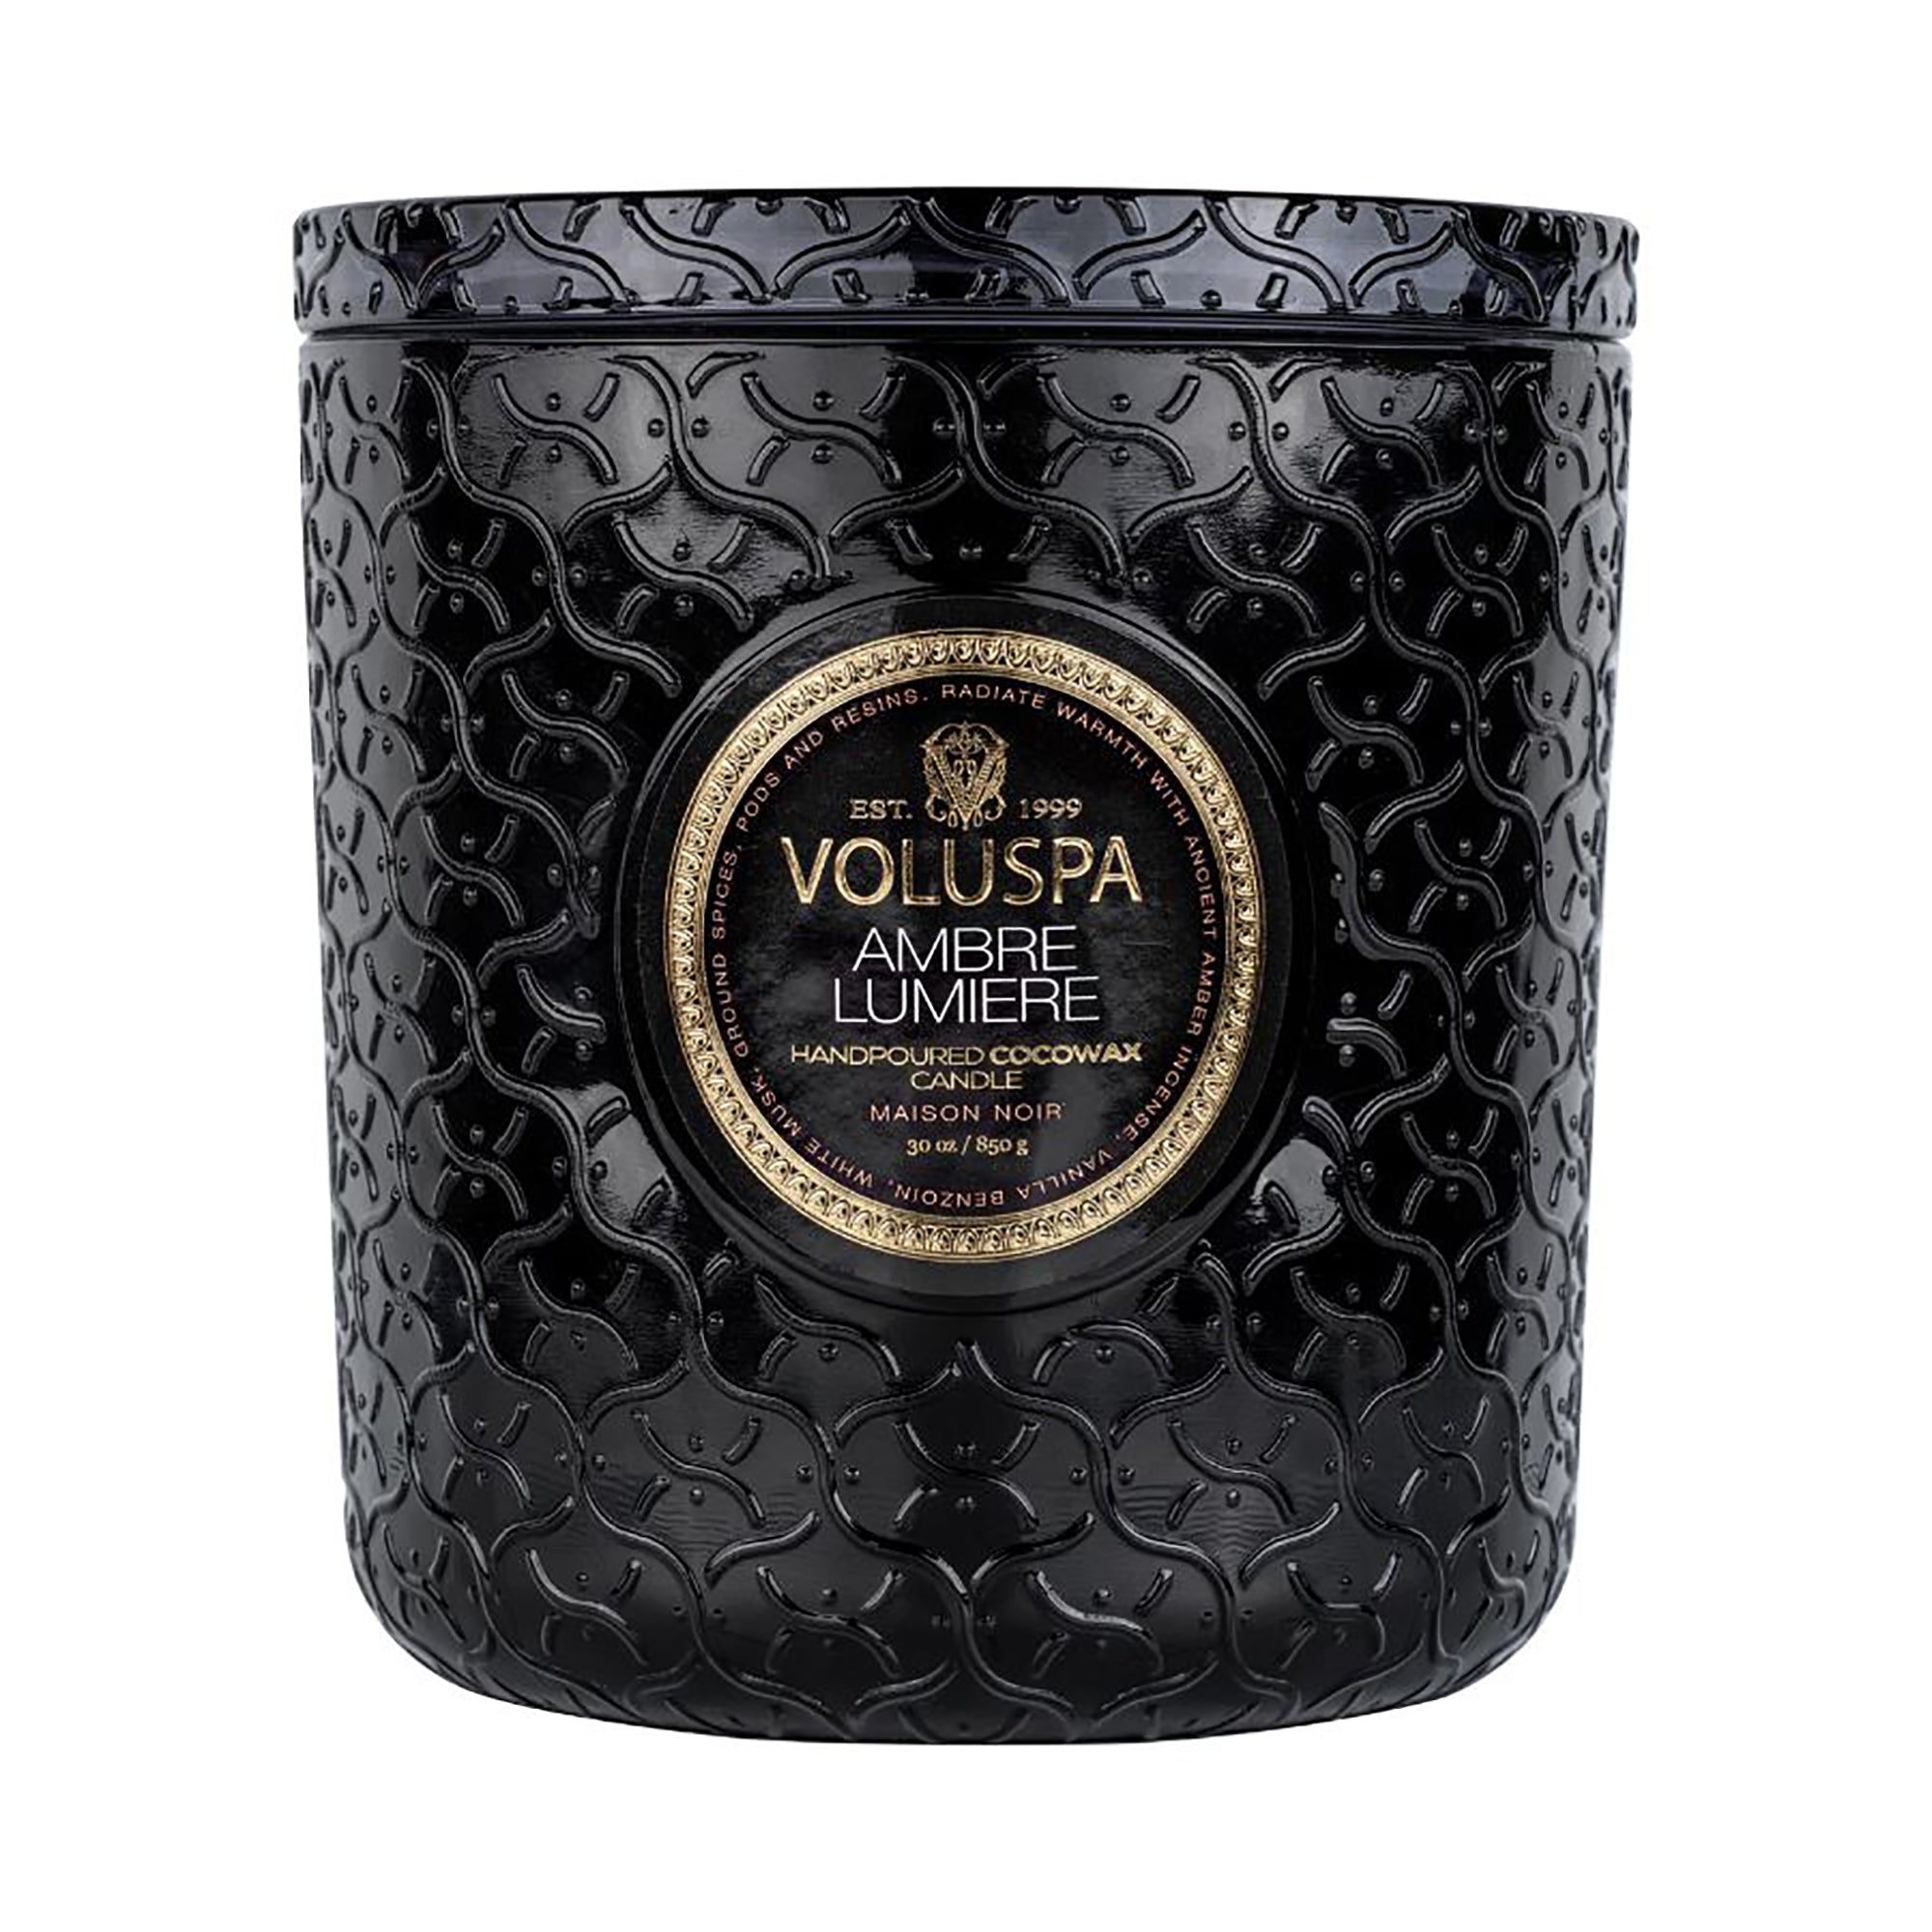 Voluspa Maison Noir Luxe Glass Jar Candle / Ambre Lumiere